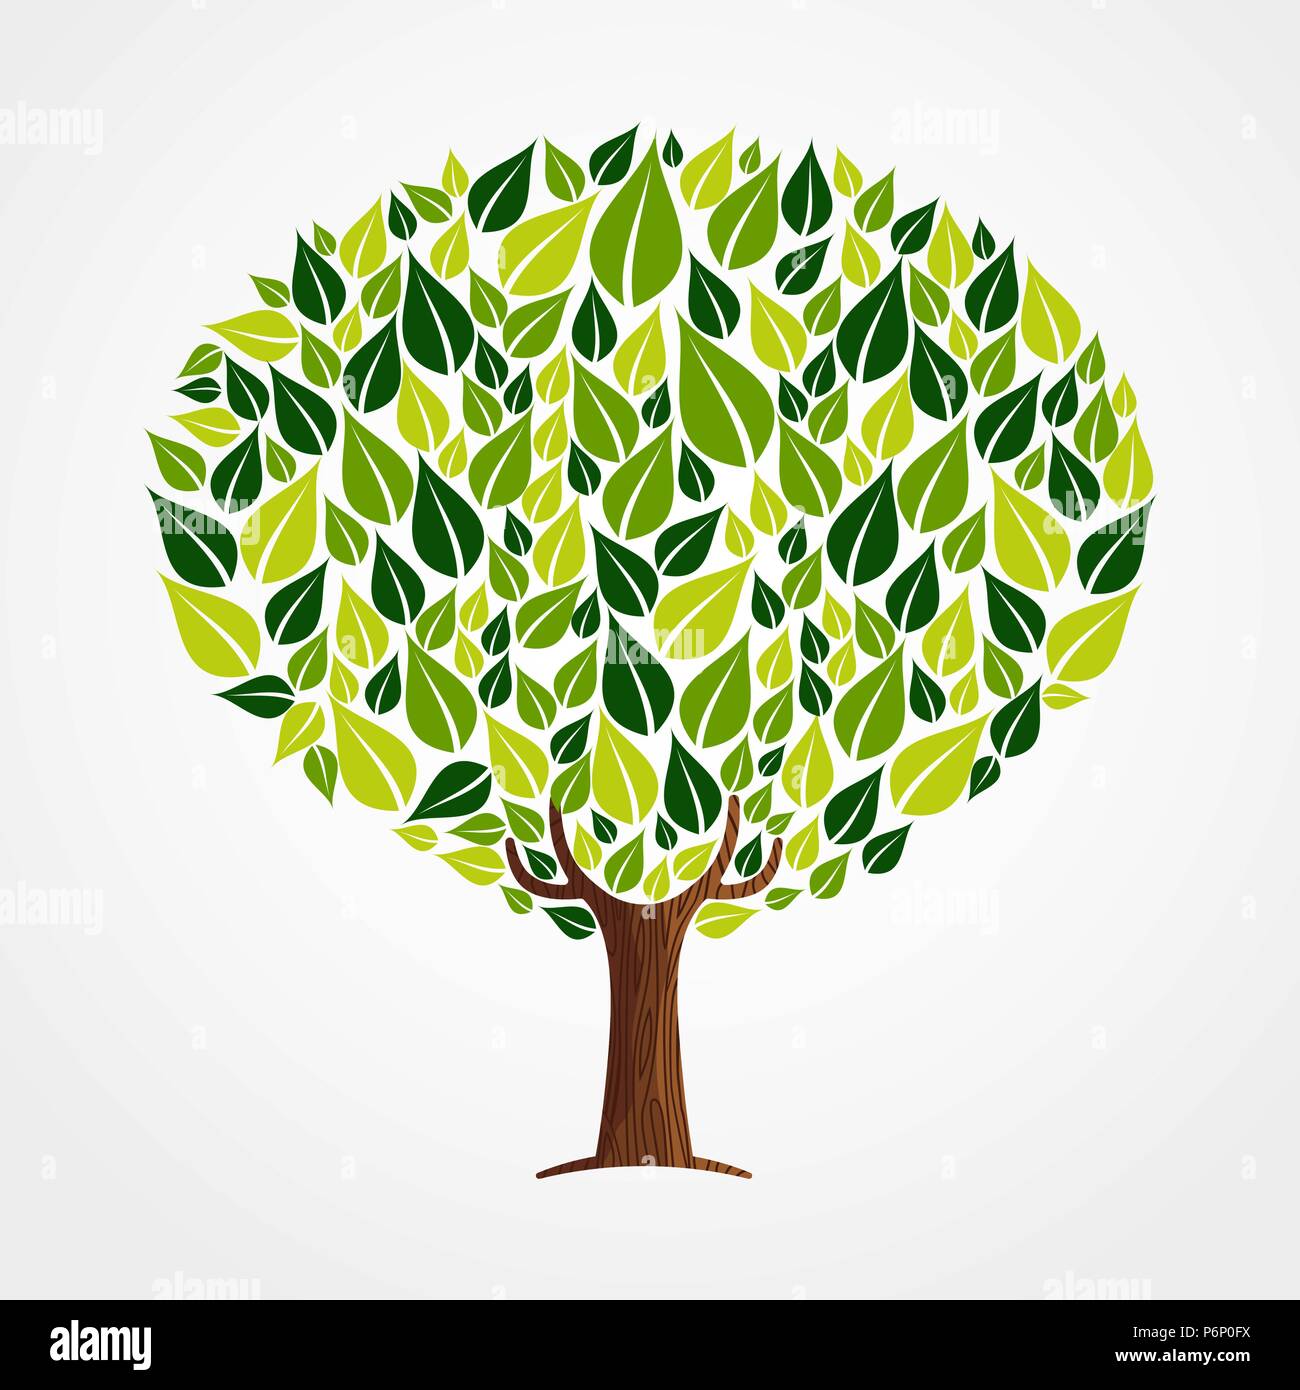 Albero fatto di foglie verdi con rami e radici. Concetto di natura, ambiente di aiuto o di cura della terra. EPS10 vettore. Illustrazione Vettoriale